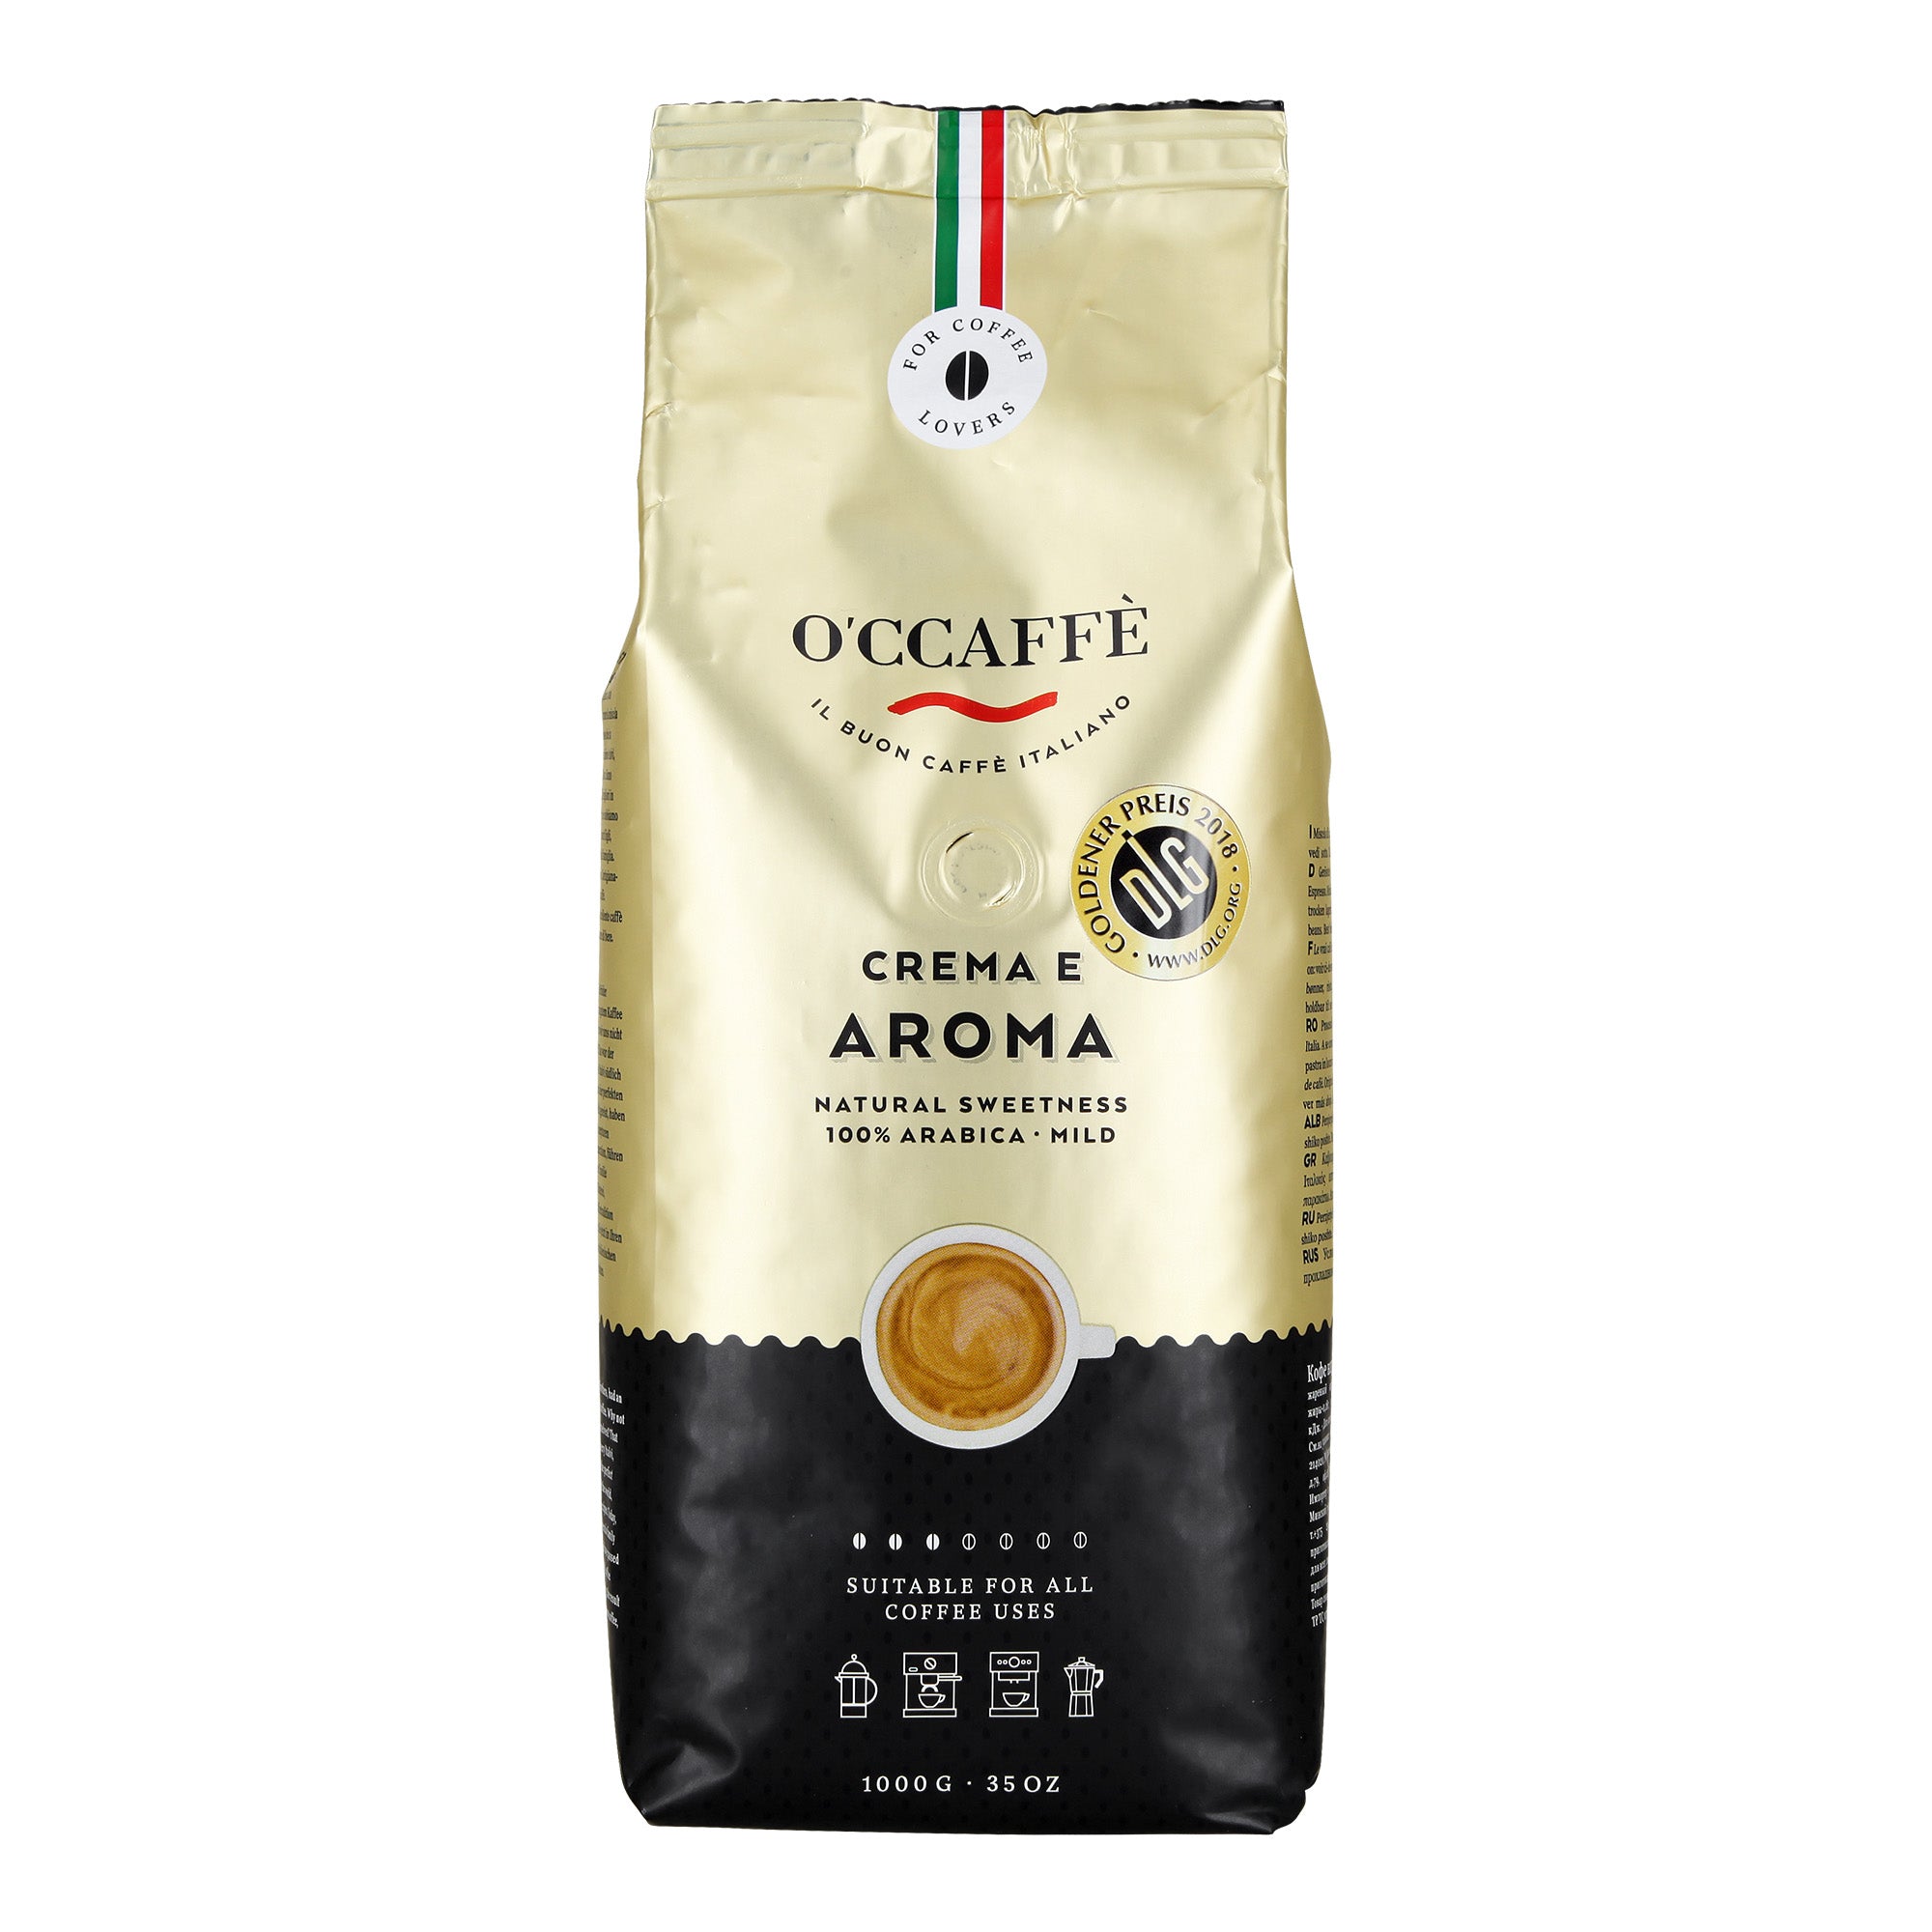 Occaffe Grano Crema E Aroma 100% Arabica 1kg